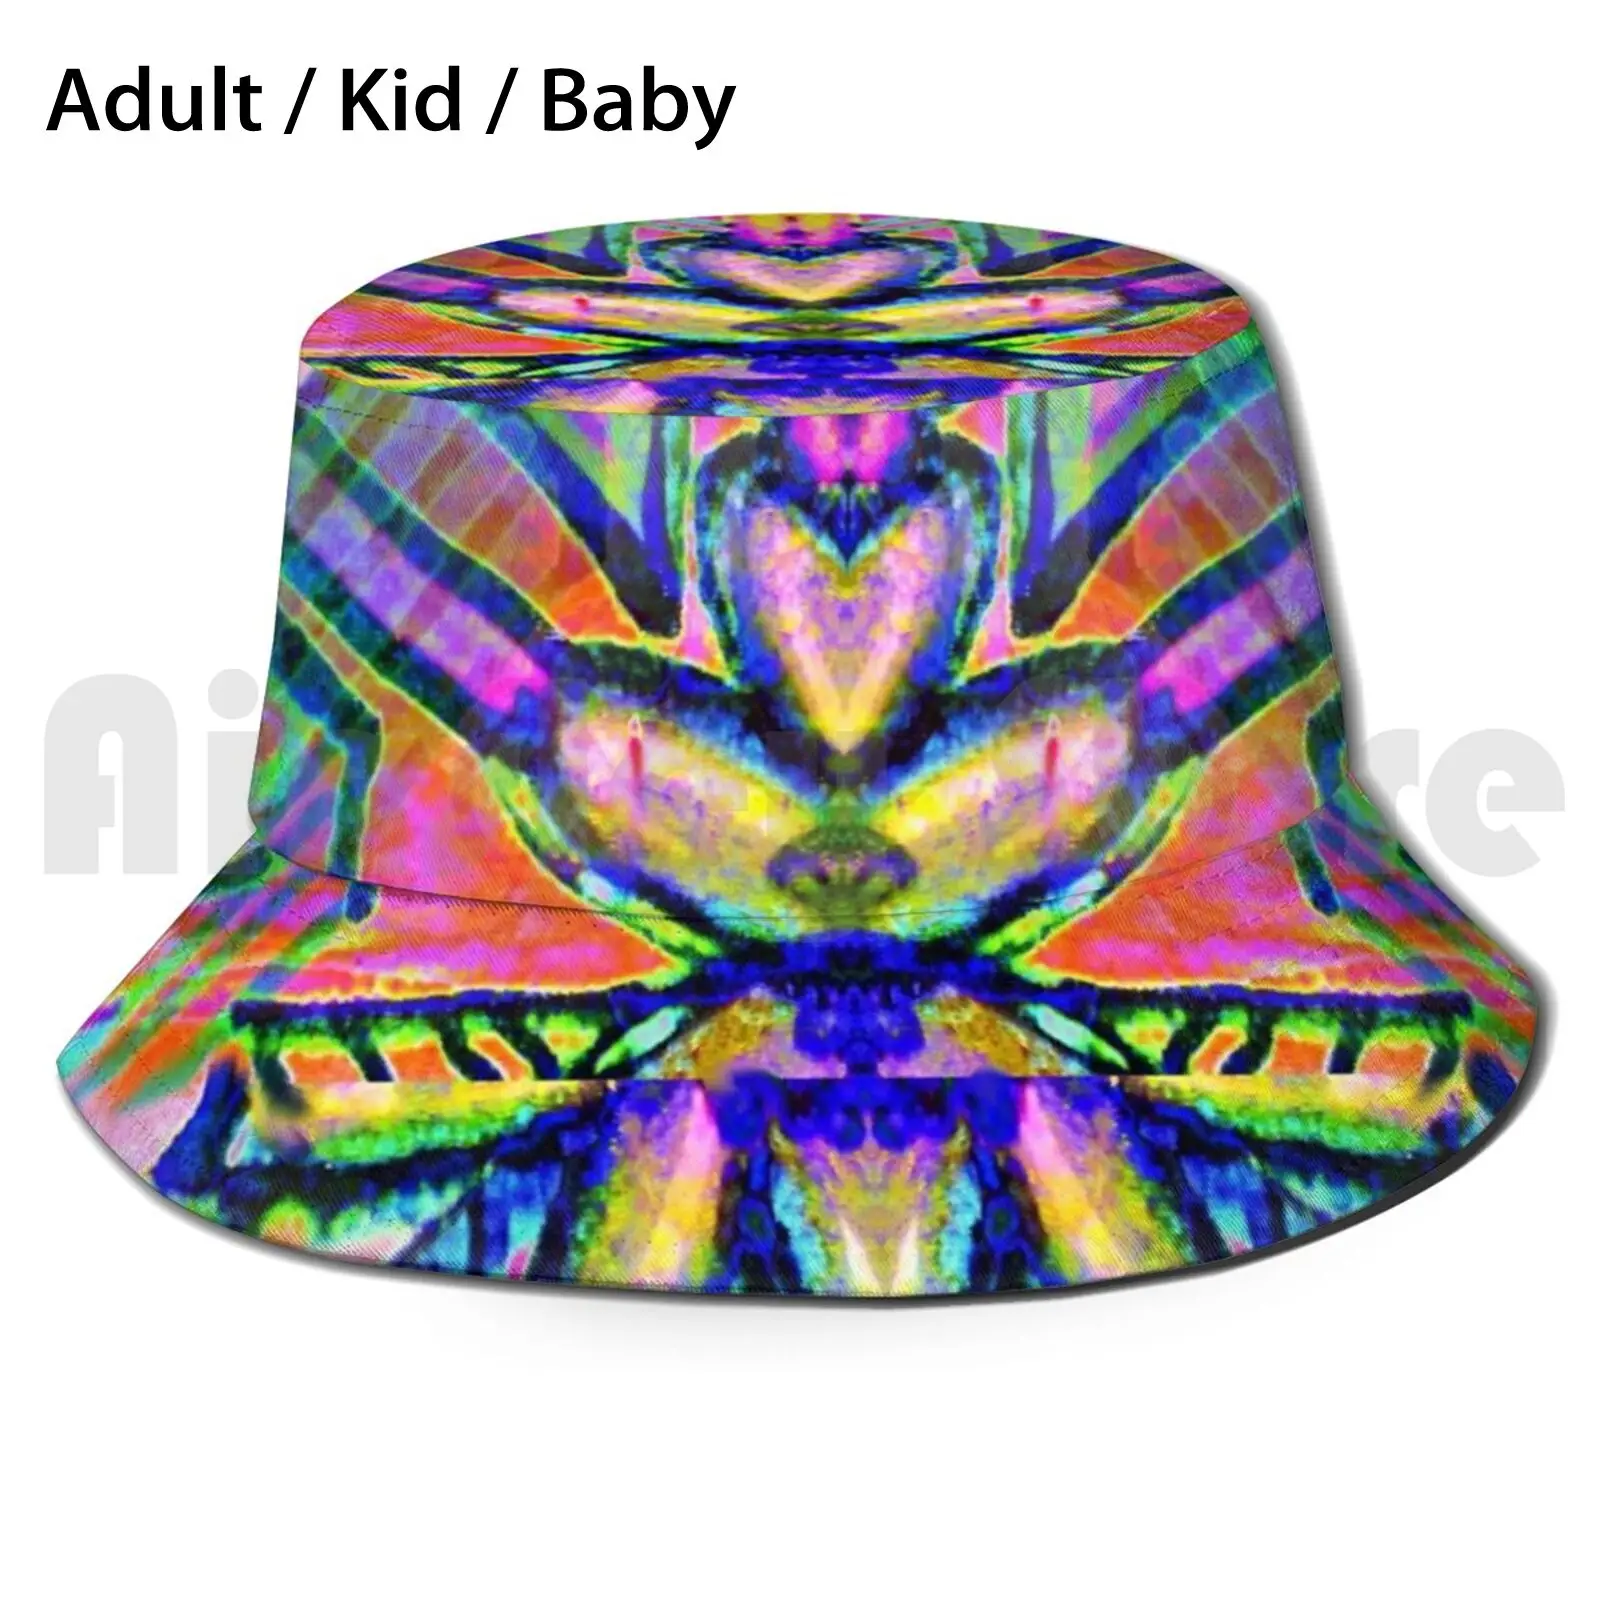 

Волшебная загадочная шляпа от солнца, складная, с УФ-защитой, розовая, синяя, абстрактная, уникальный кобальтовый узор, с сердцем, этническая...